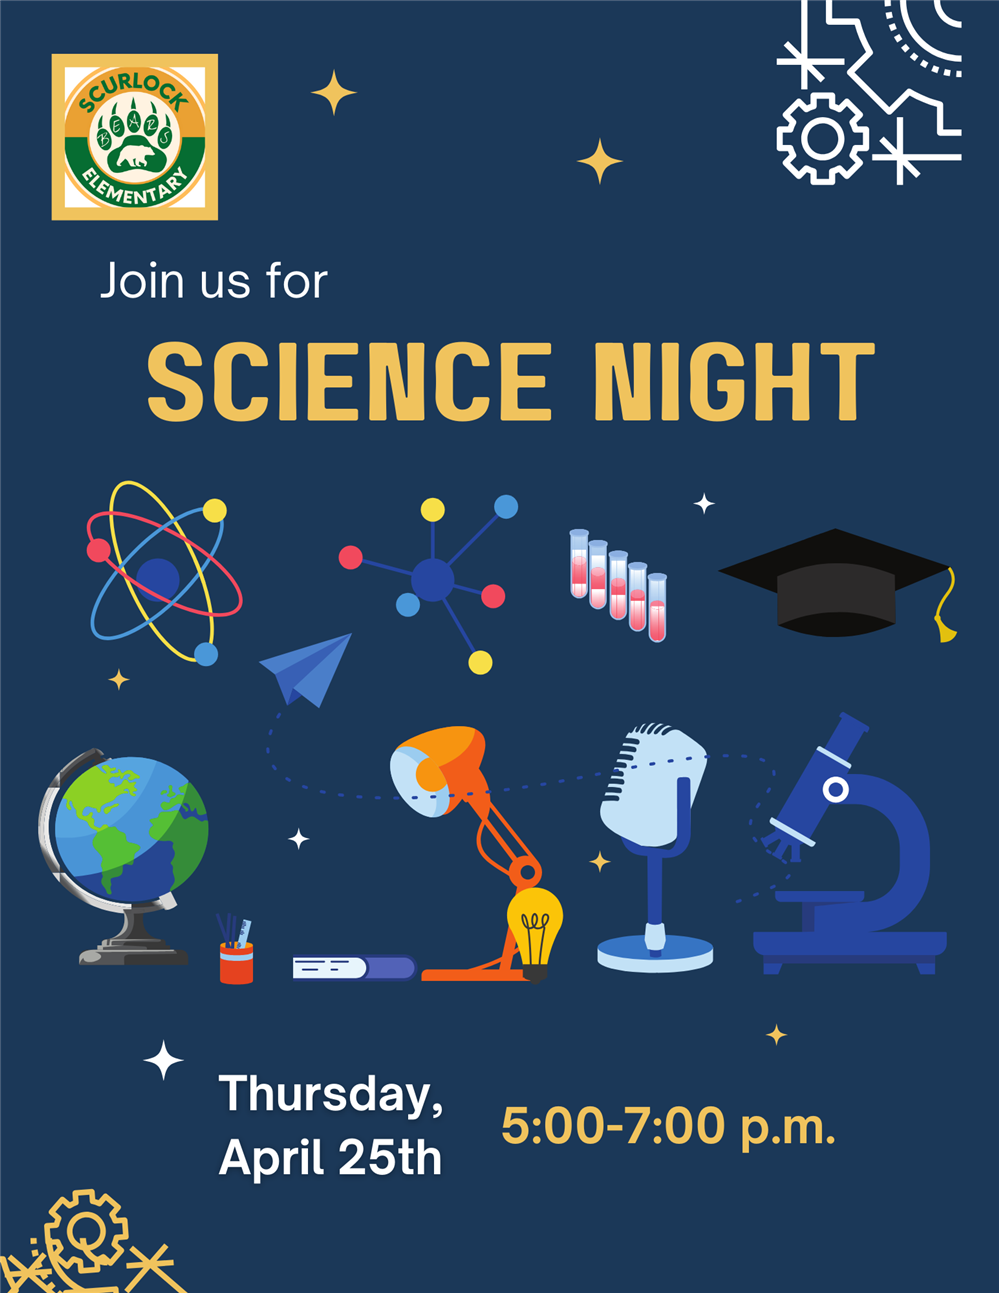  Science Night